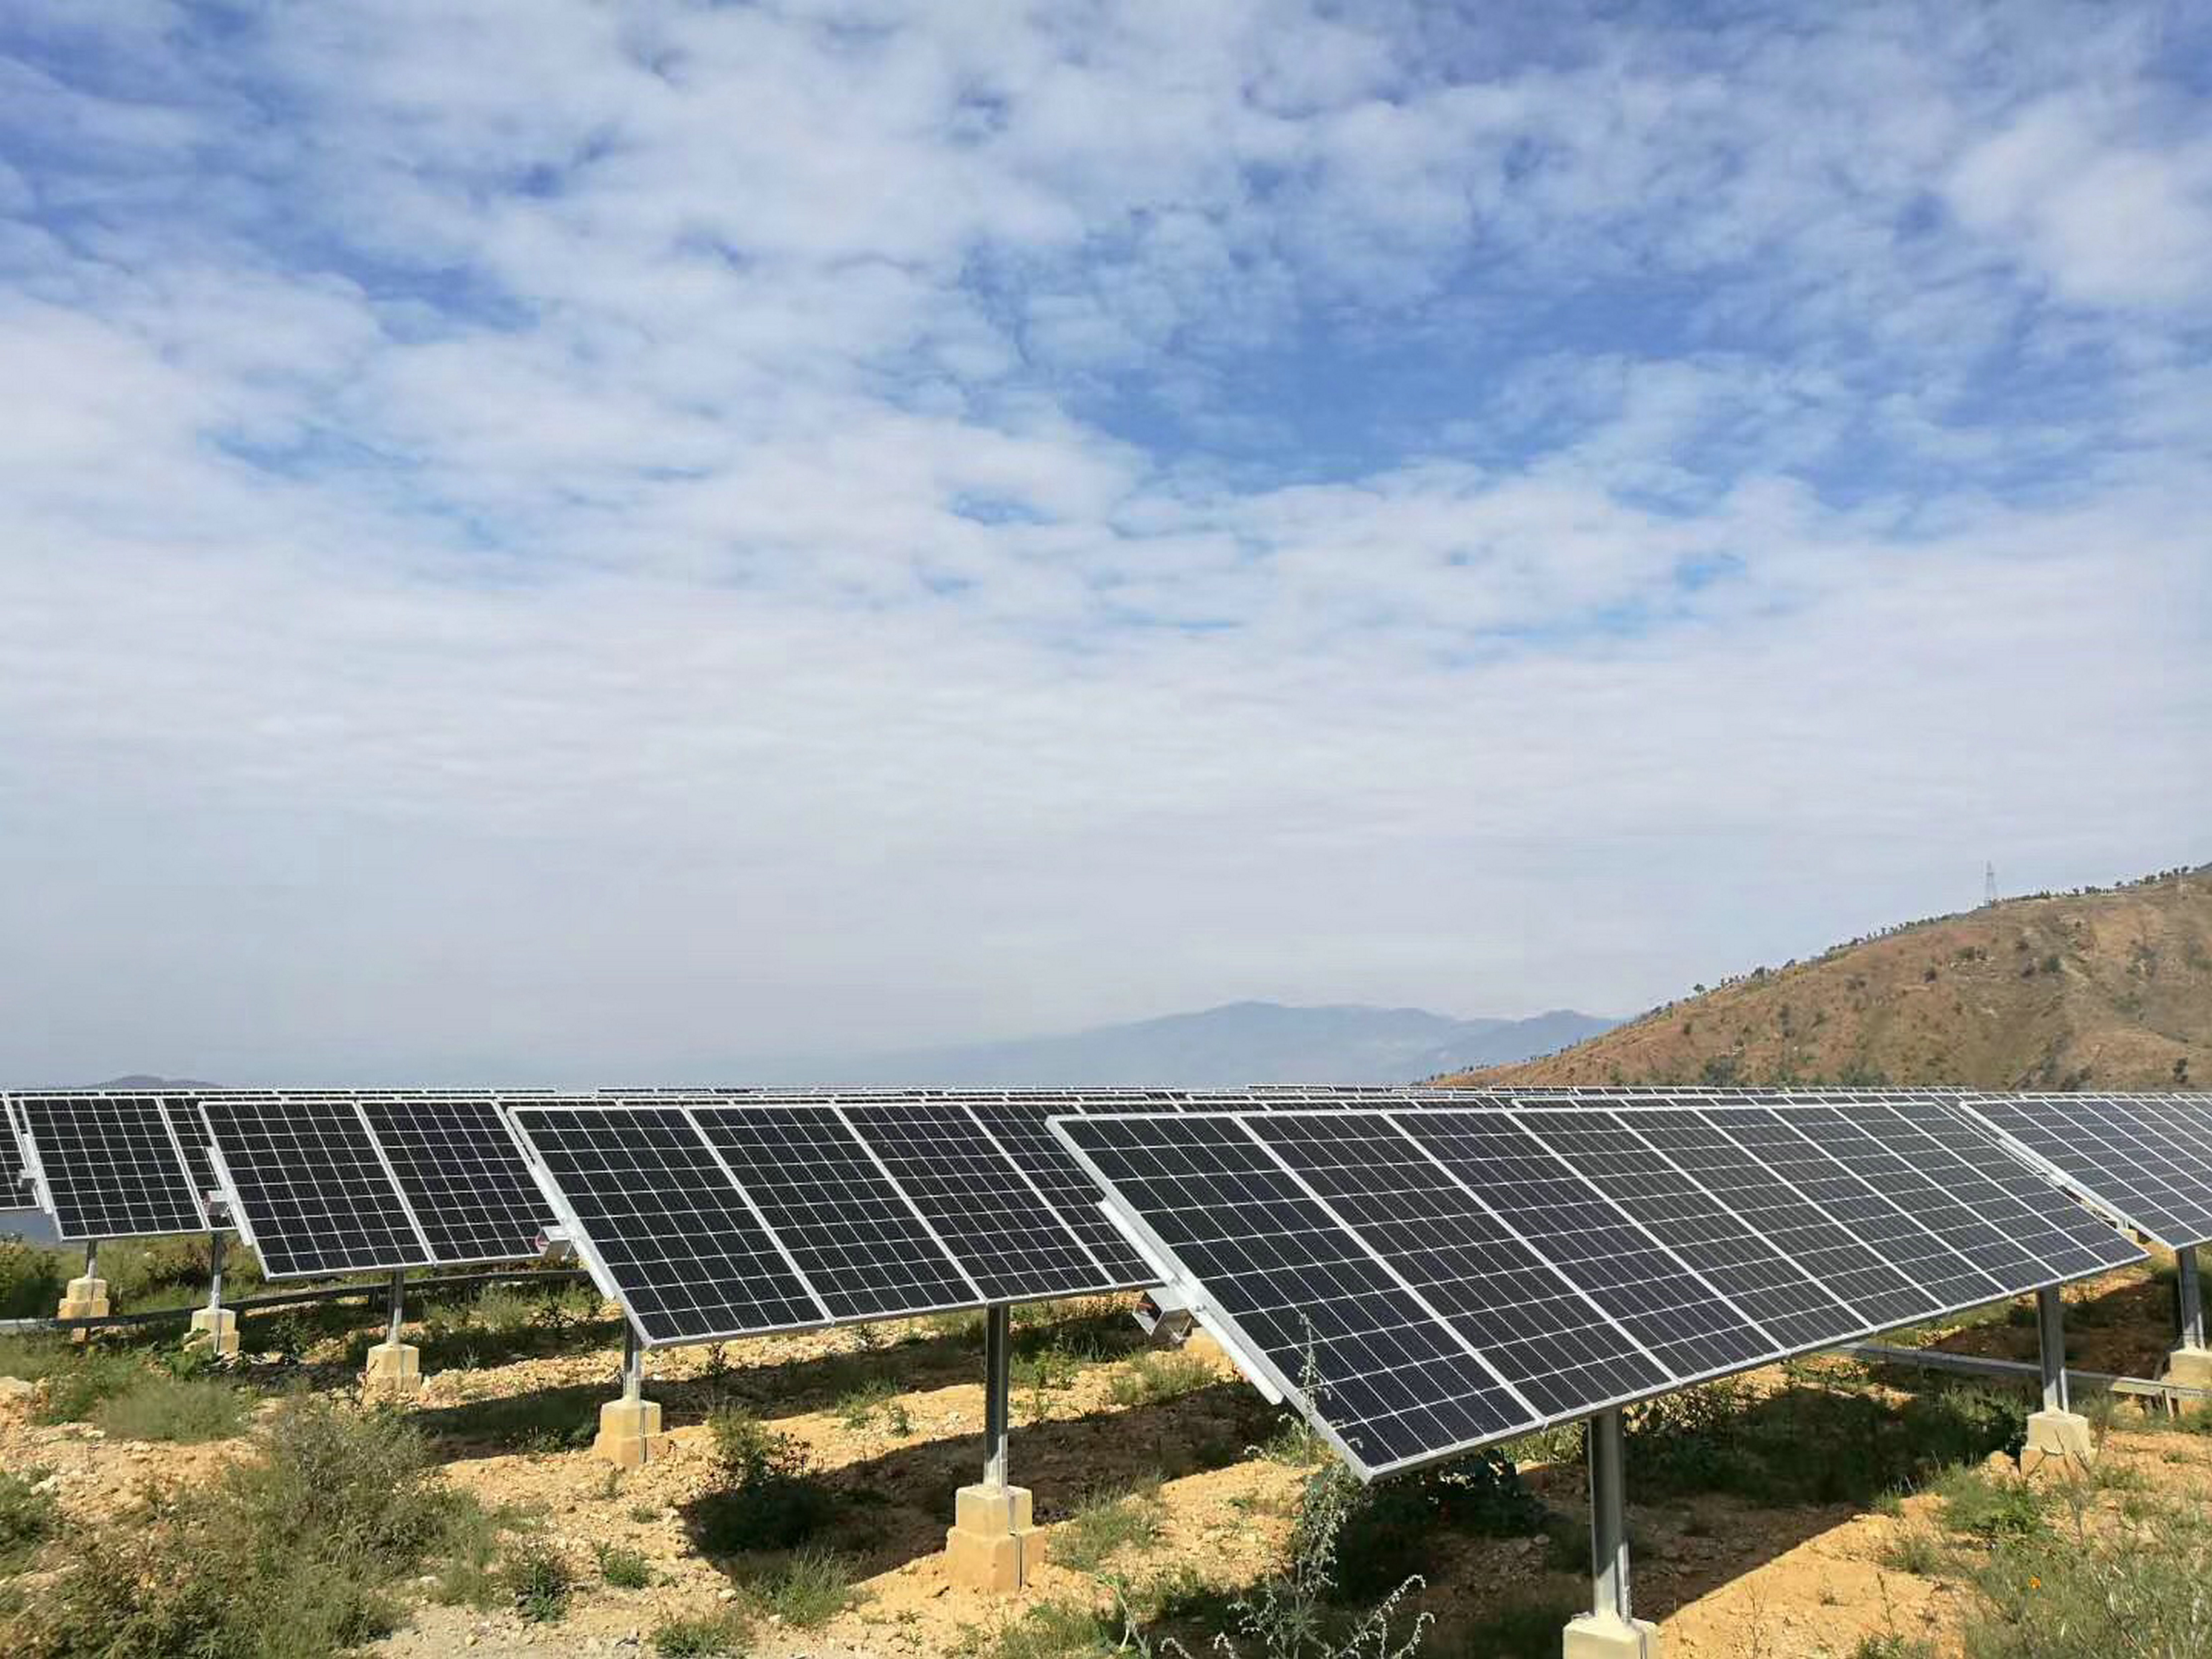 el largo plazo fotovoltaico depende de la calidad y la fiabilidad